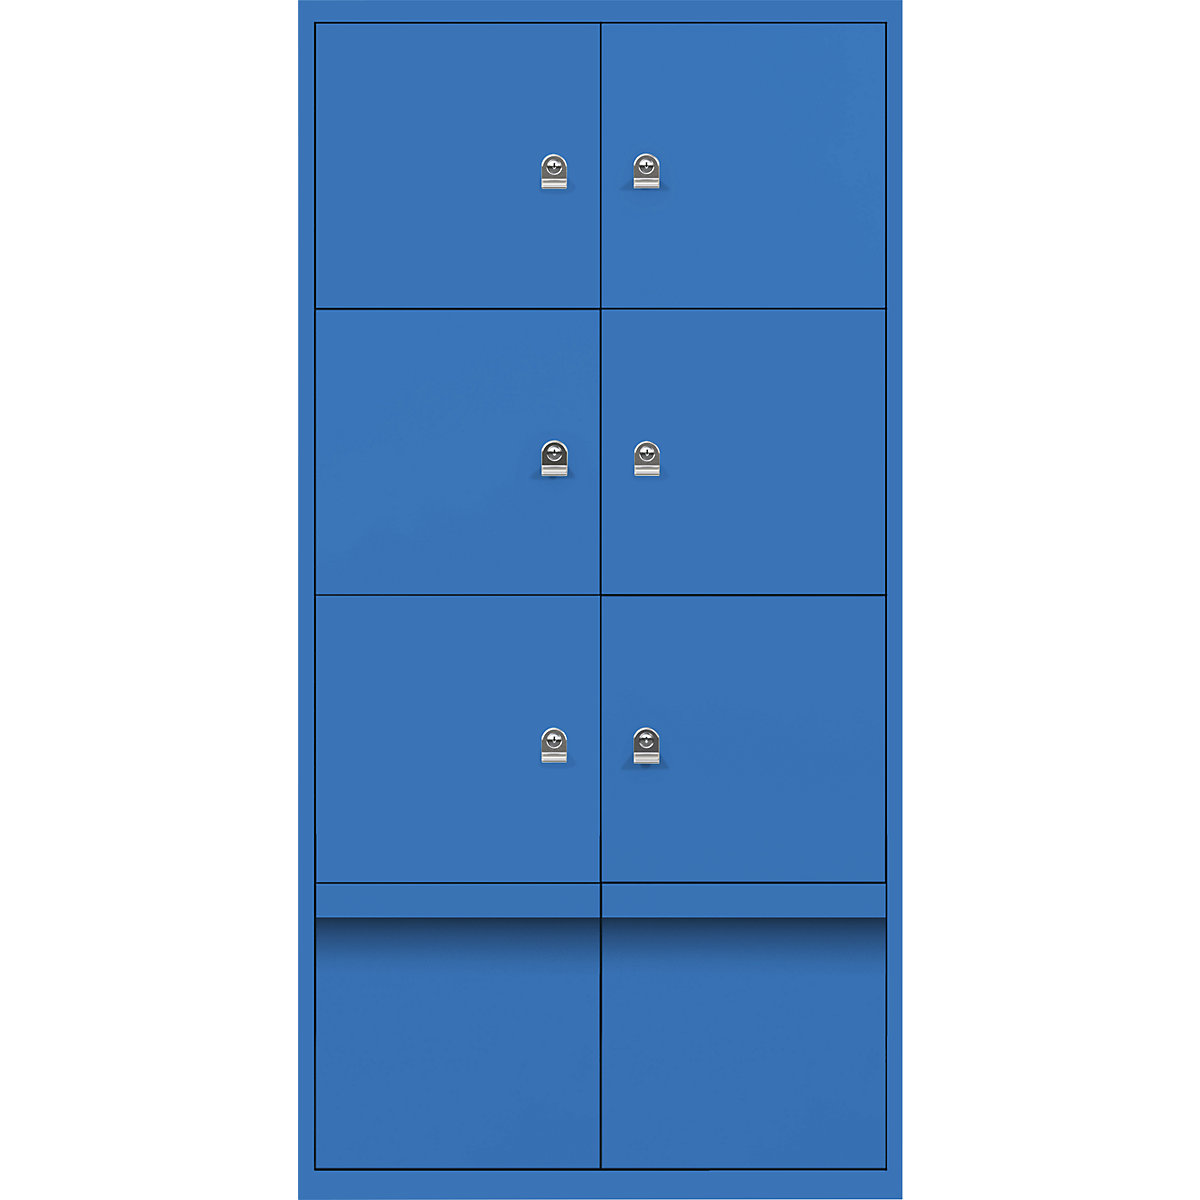 Omara s predelki z zaklepanjem LateralFile™ – BISLEY, 6 predelkov z zaklepanjem in 2 predala, višina po 375 mm, modre barve-28